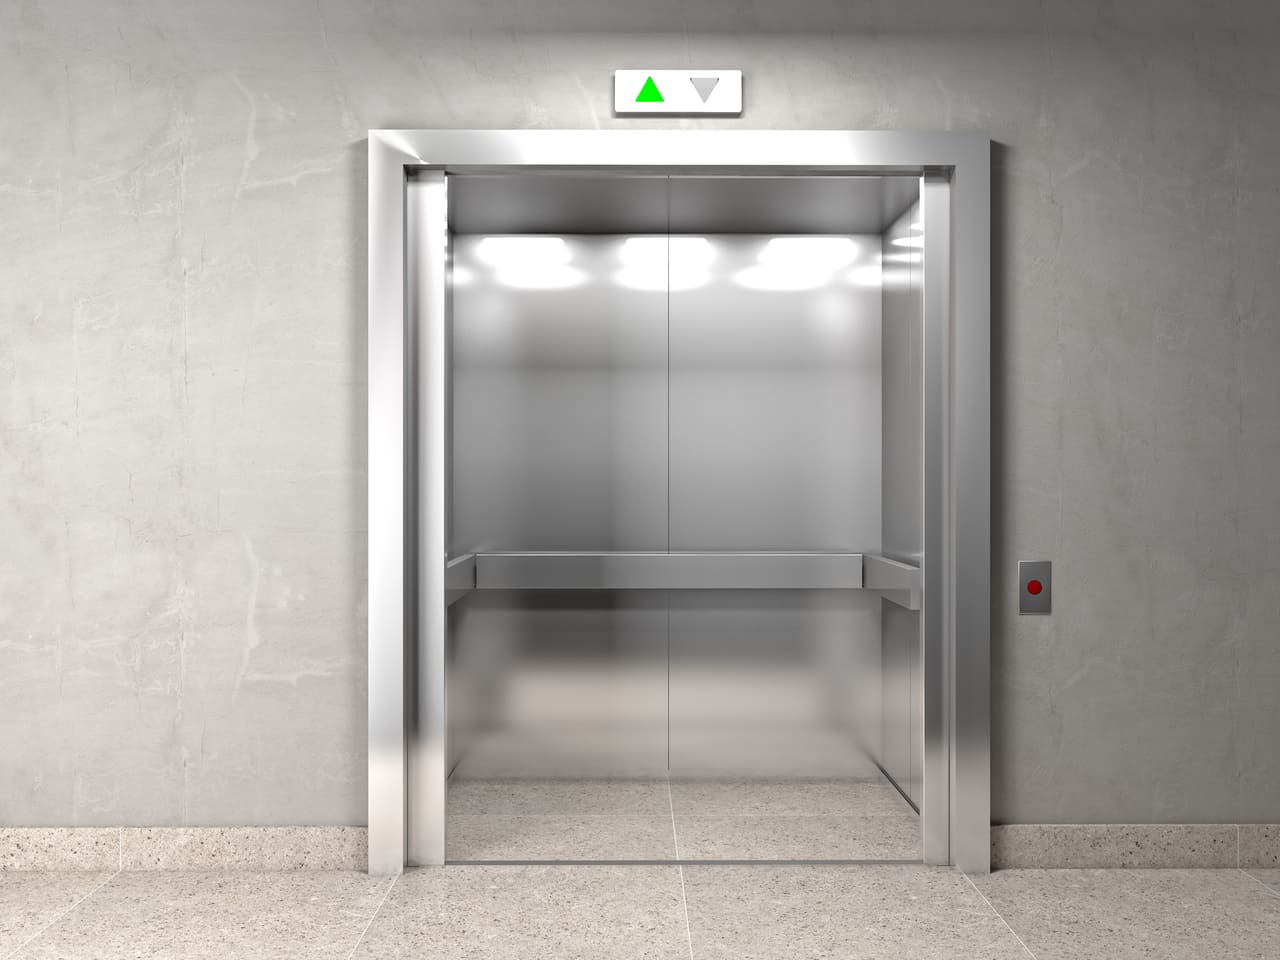 ¿Qué significa soñar con un ascensor?